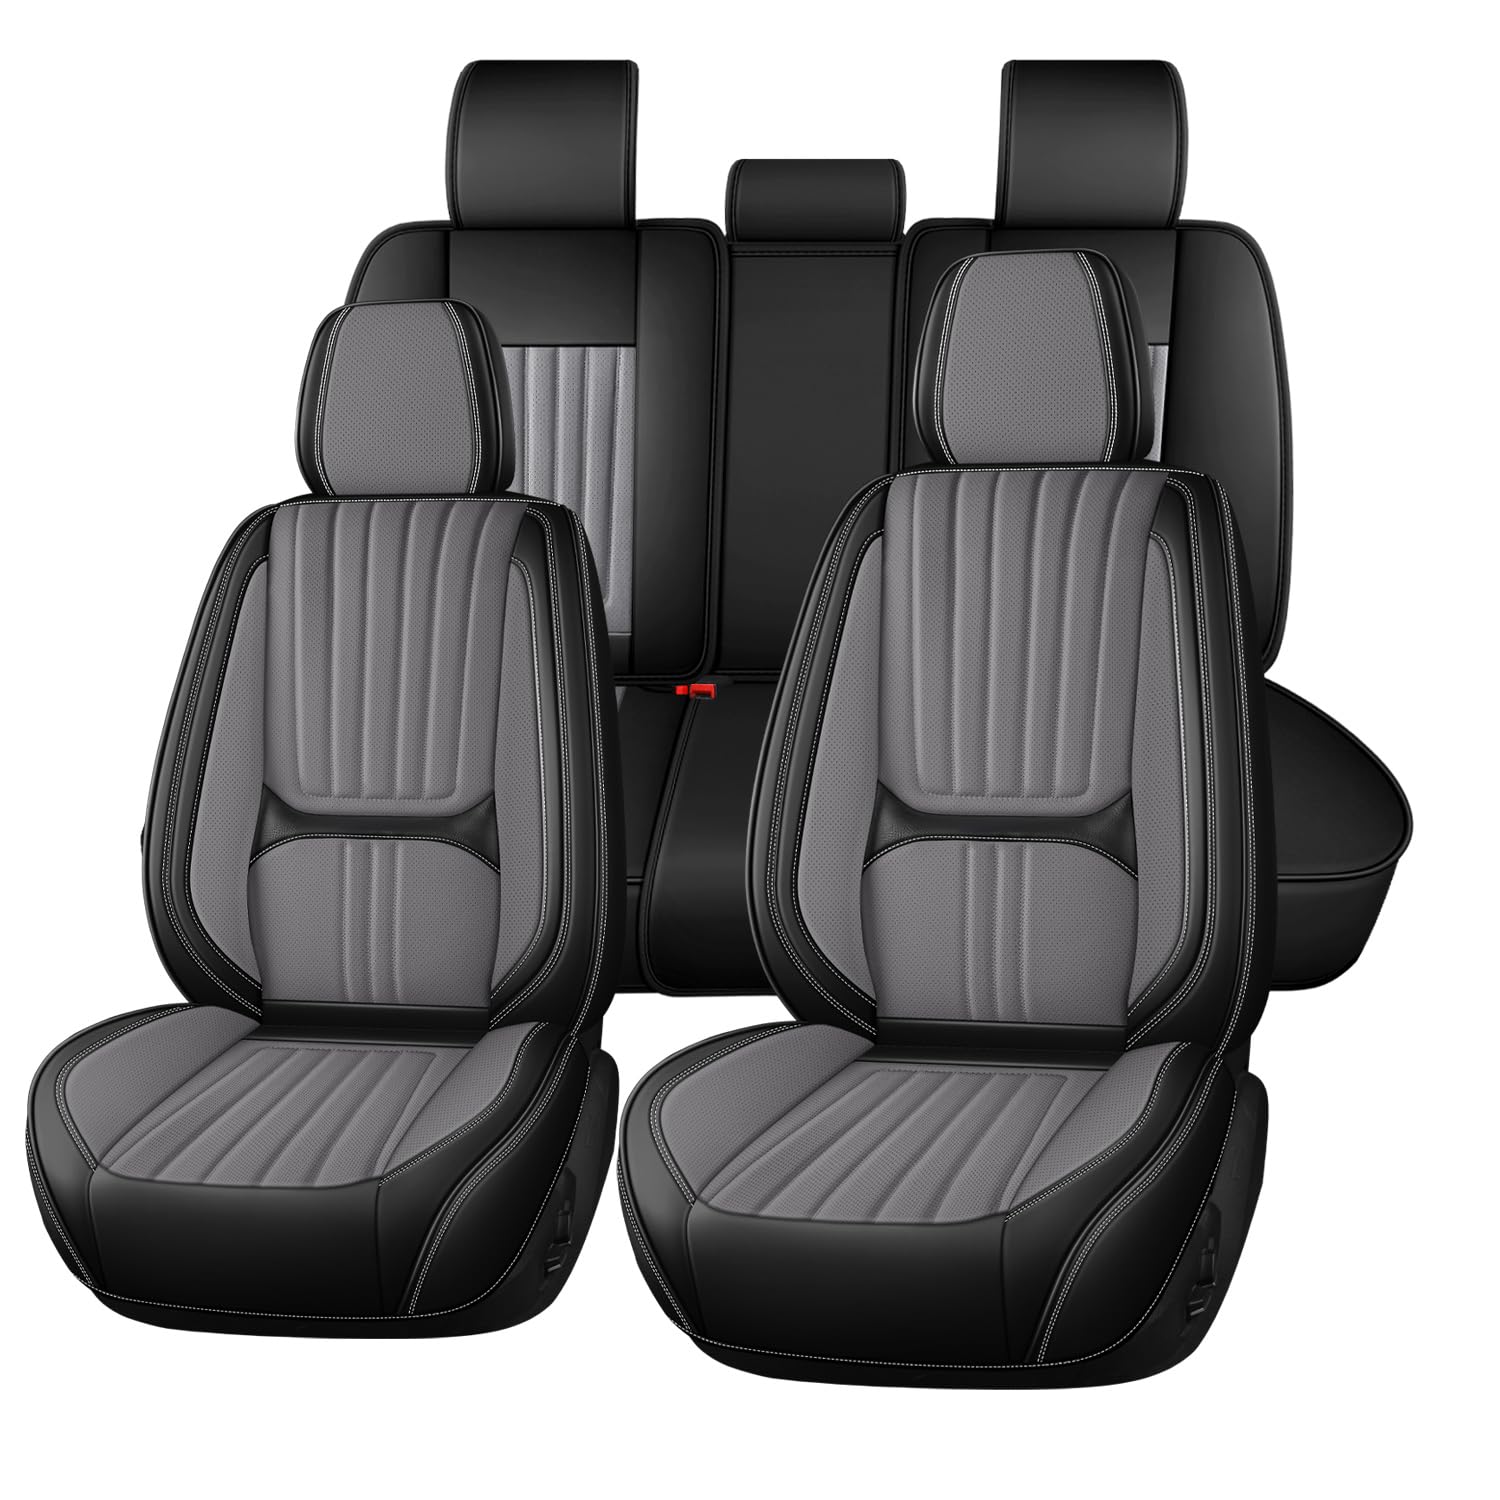 Buuoo Autositzbezüge Universal passend für Mercede Benz W203 W204 W205 W211 W212 W213 W124 GLK GLC W164 W166 GLE Sitzkissen Schonbezug Set von Buuoo